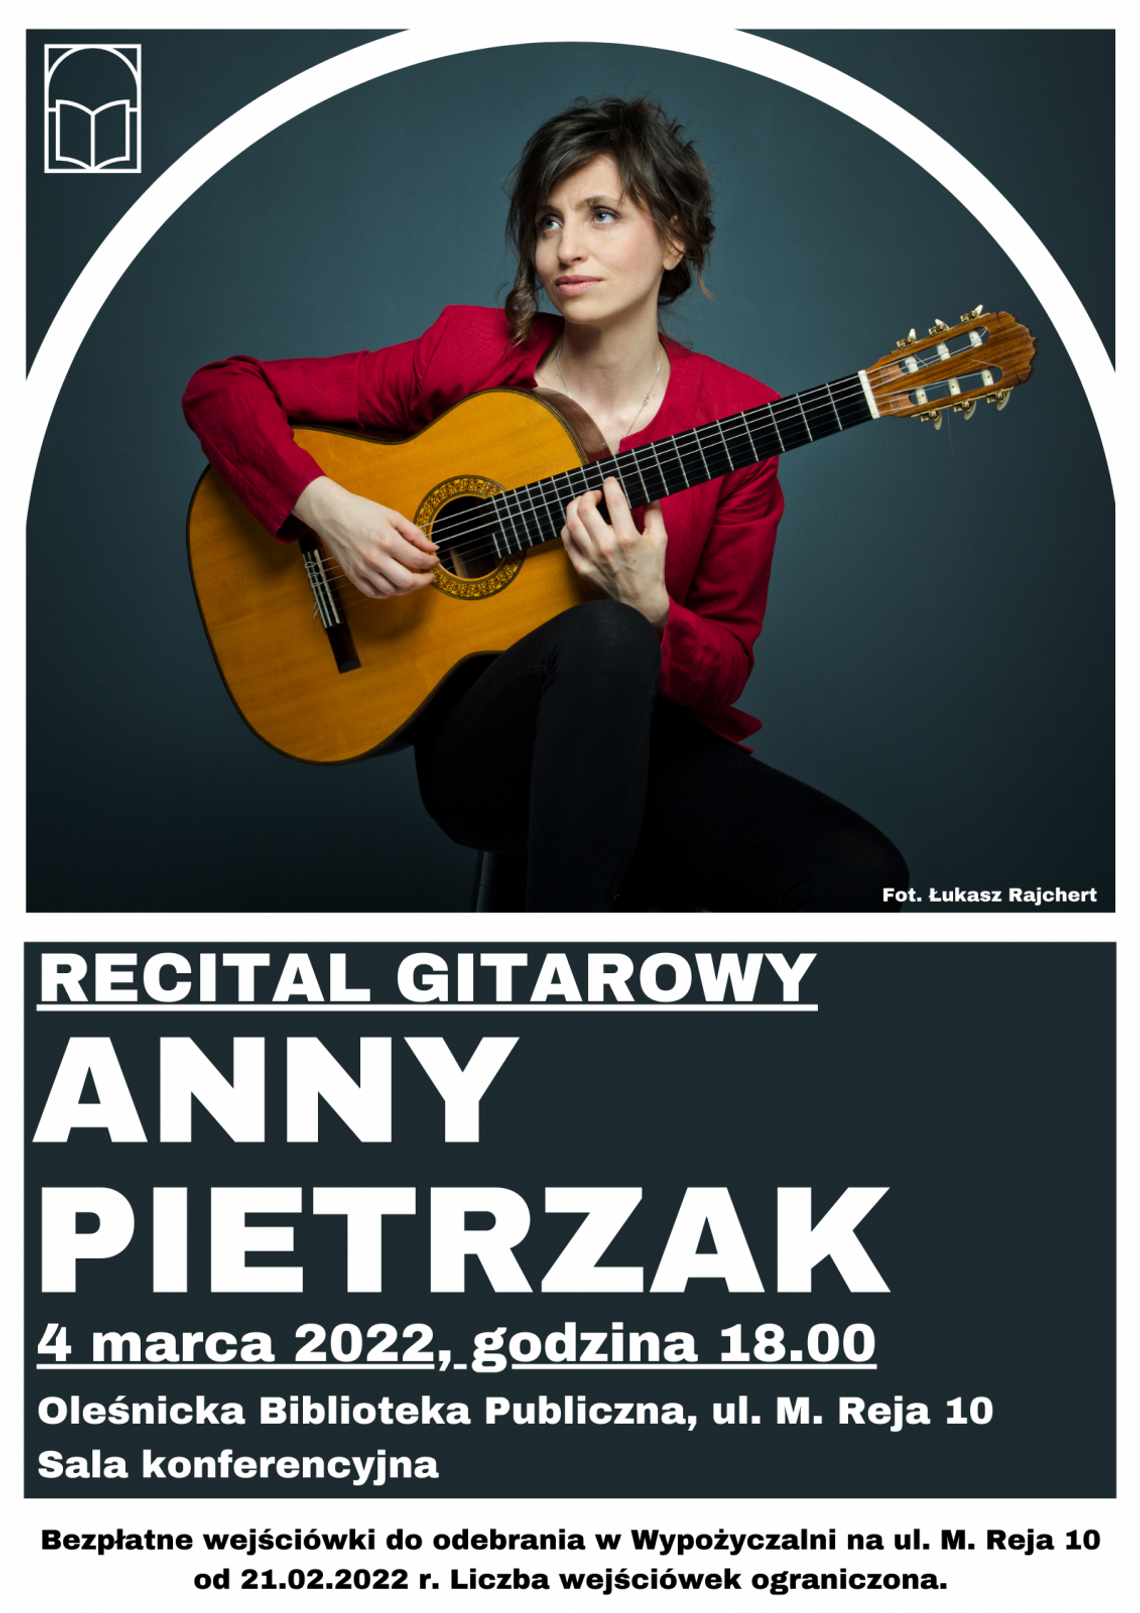 Klimatyczny wieczór  - koncert Anny Pietrzak